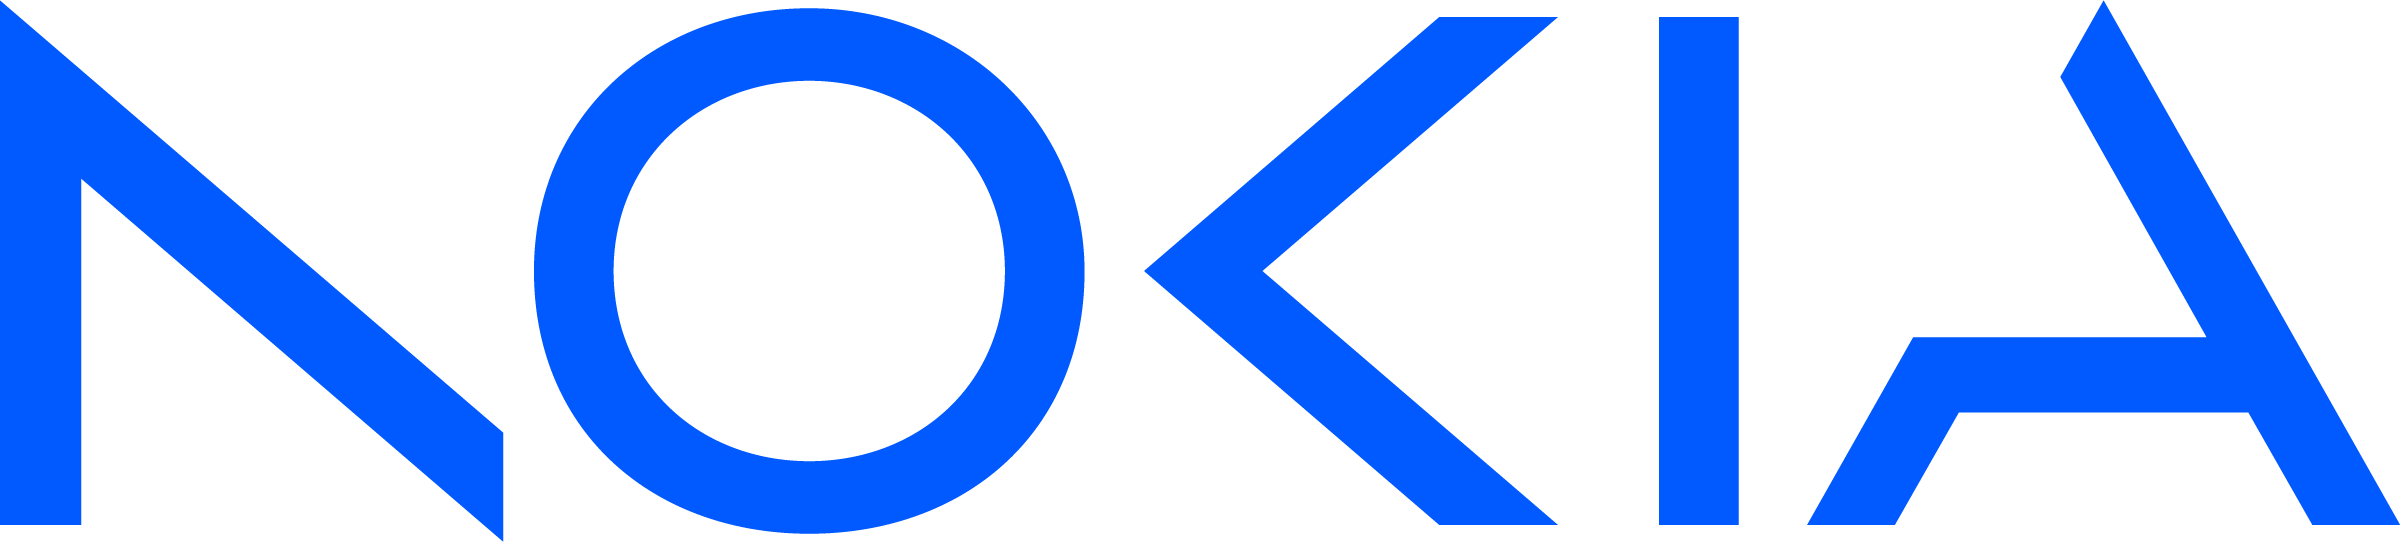 _images/nokia-logo-blue-2023.png